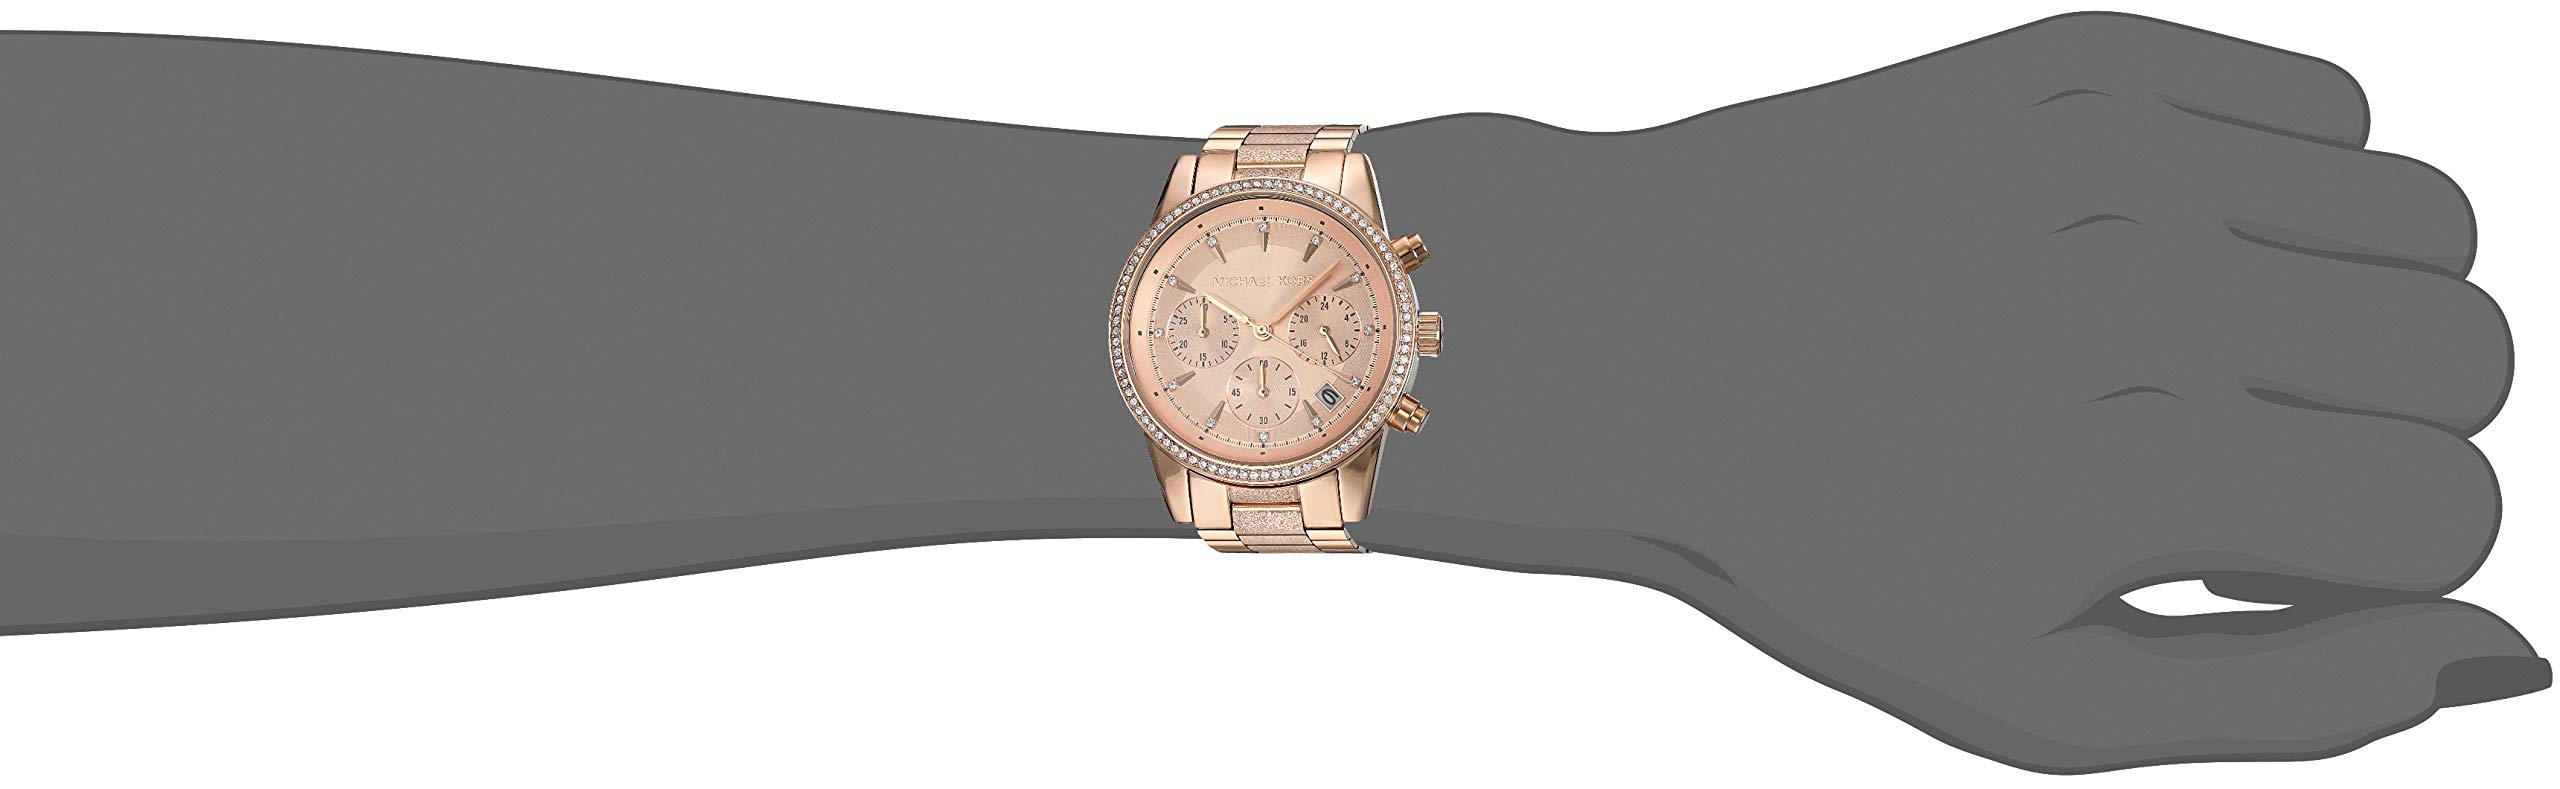 Michael Kors Women's MK6598 Ritz Analog Display Analog Quartz Rose Gold Watch